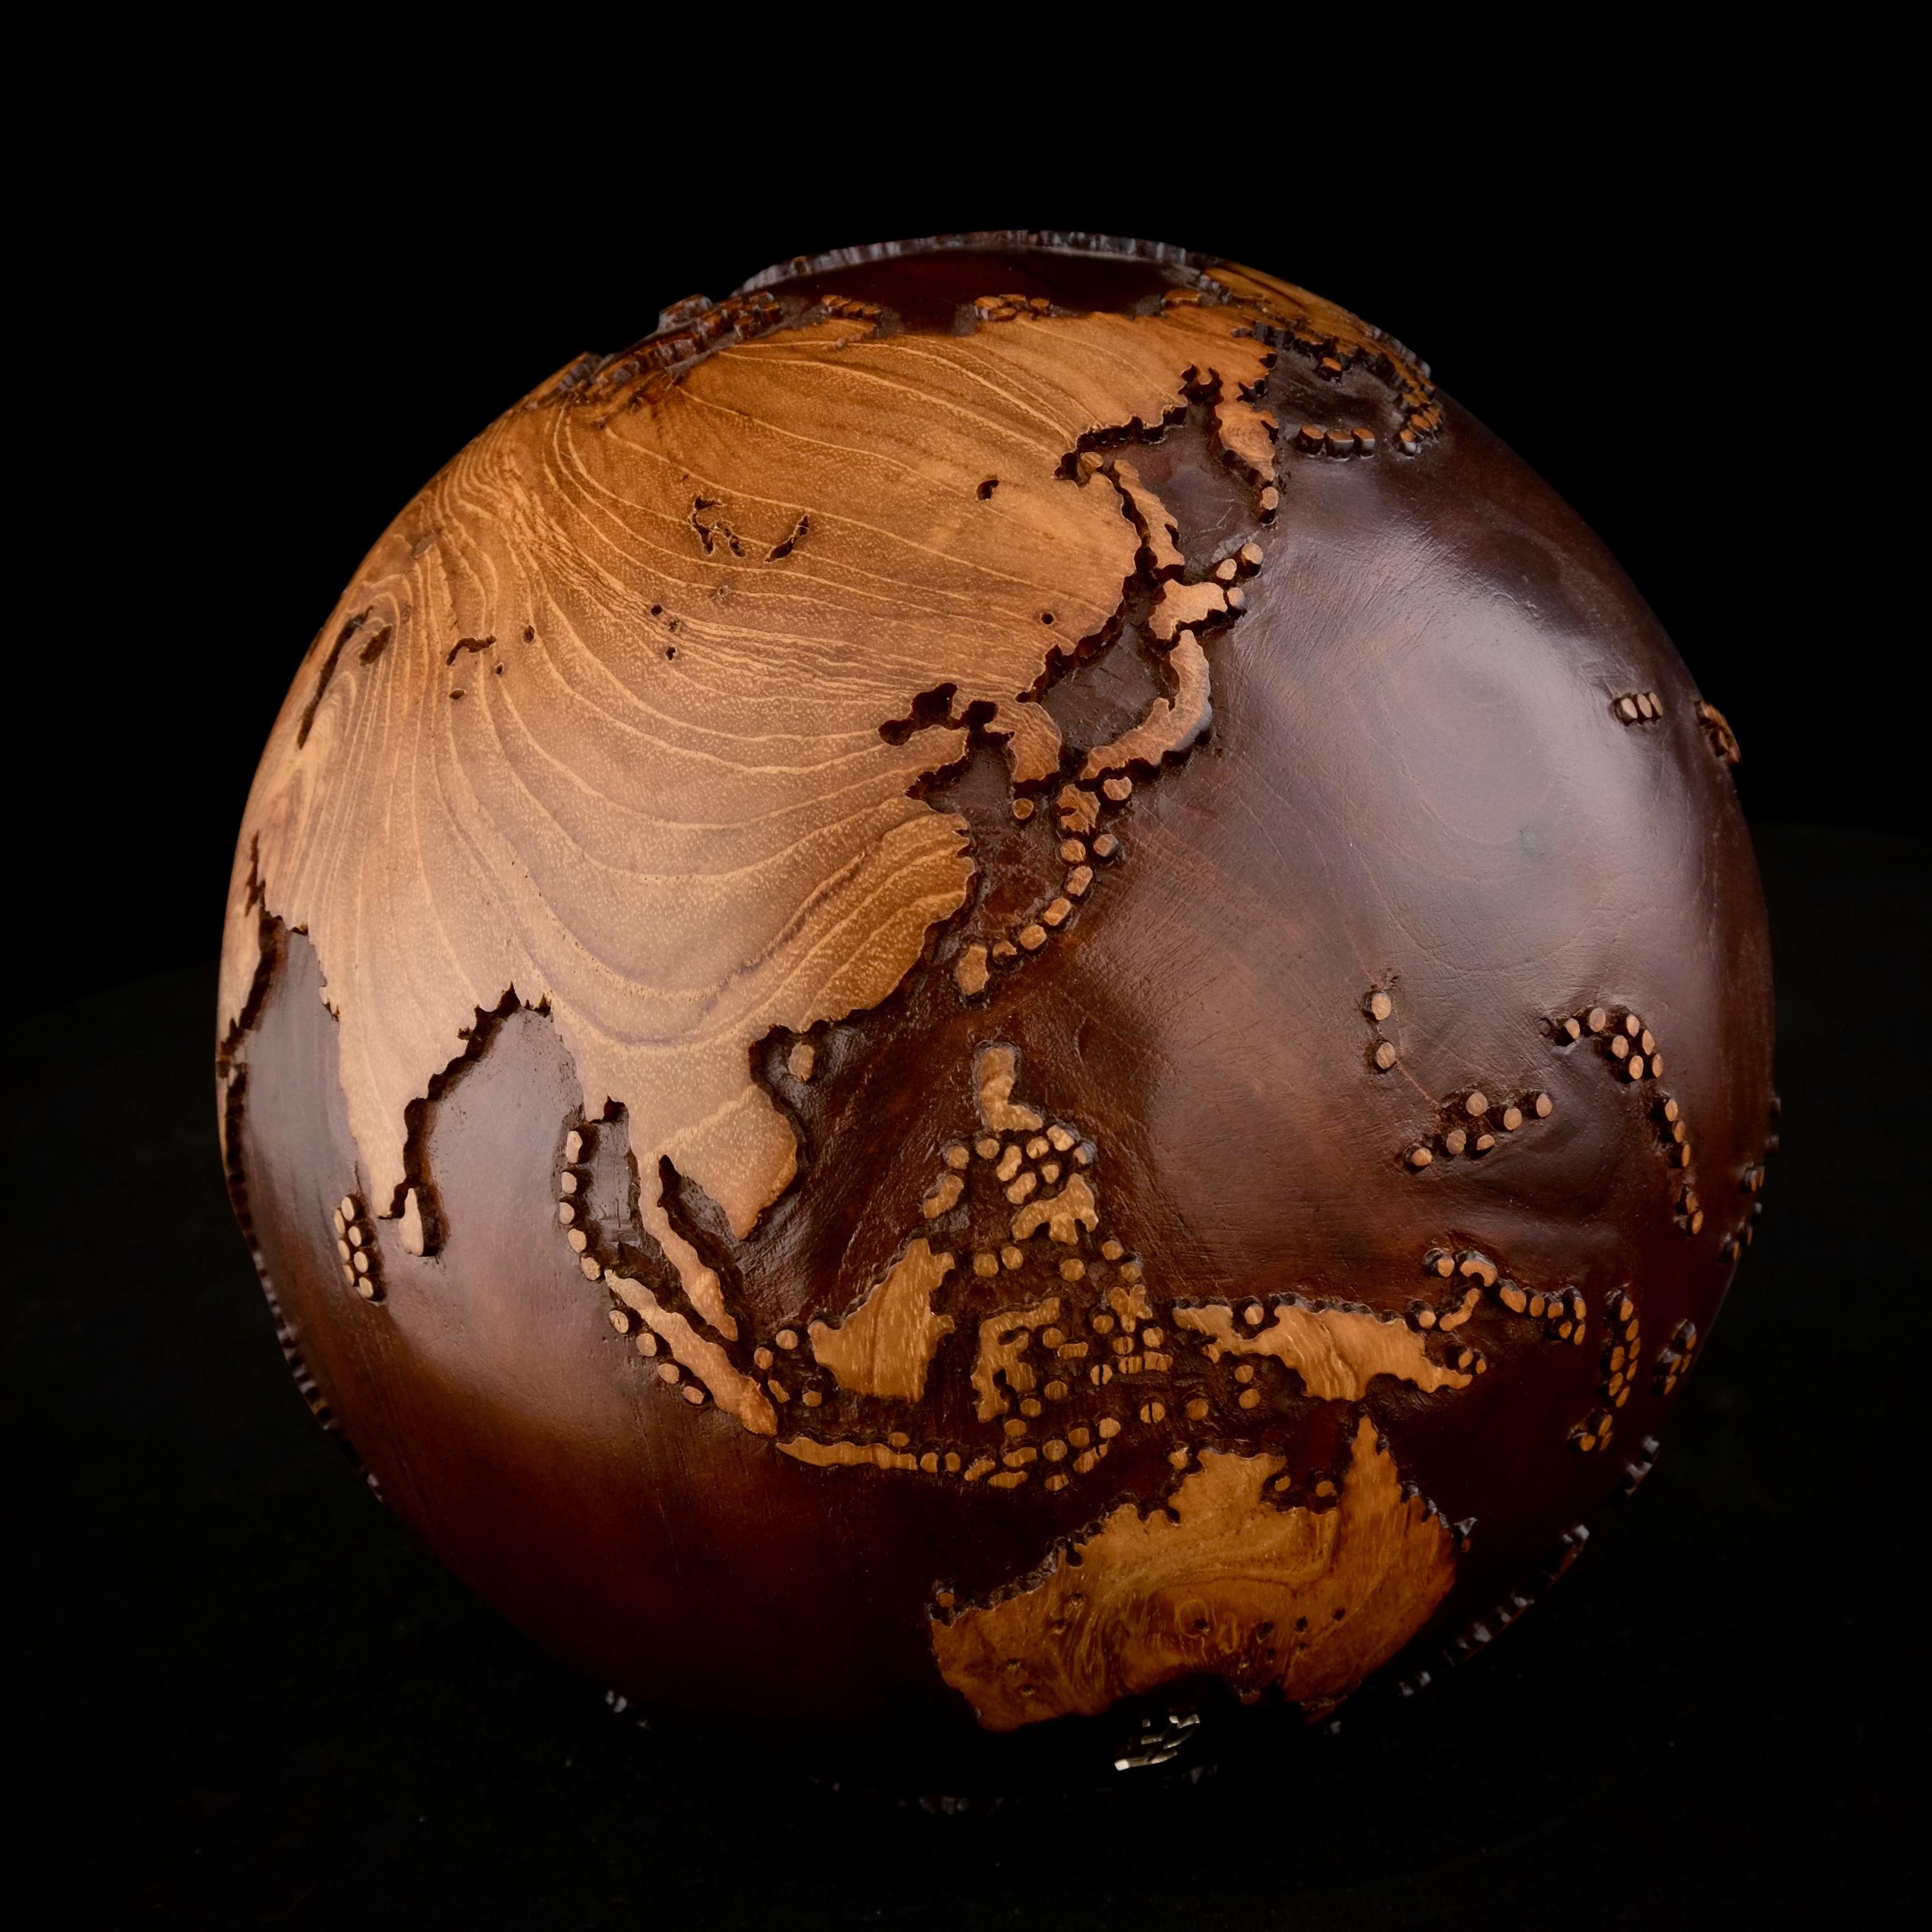 La teinture du noyer fait de ce magnifique globe tournant une véritable sculpture.
Réalisée à partir d'un morceau de bois entier, la sculpture est façonnée en fonction de la croissance de l'arbre.
Posée sur un socle tournant, la sculpture peut